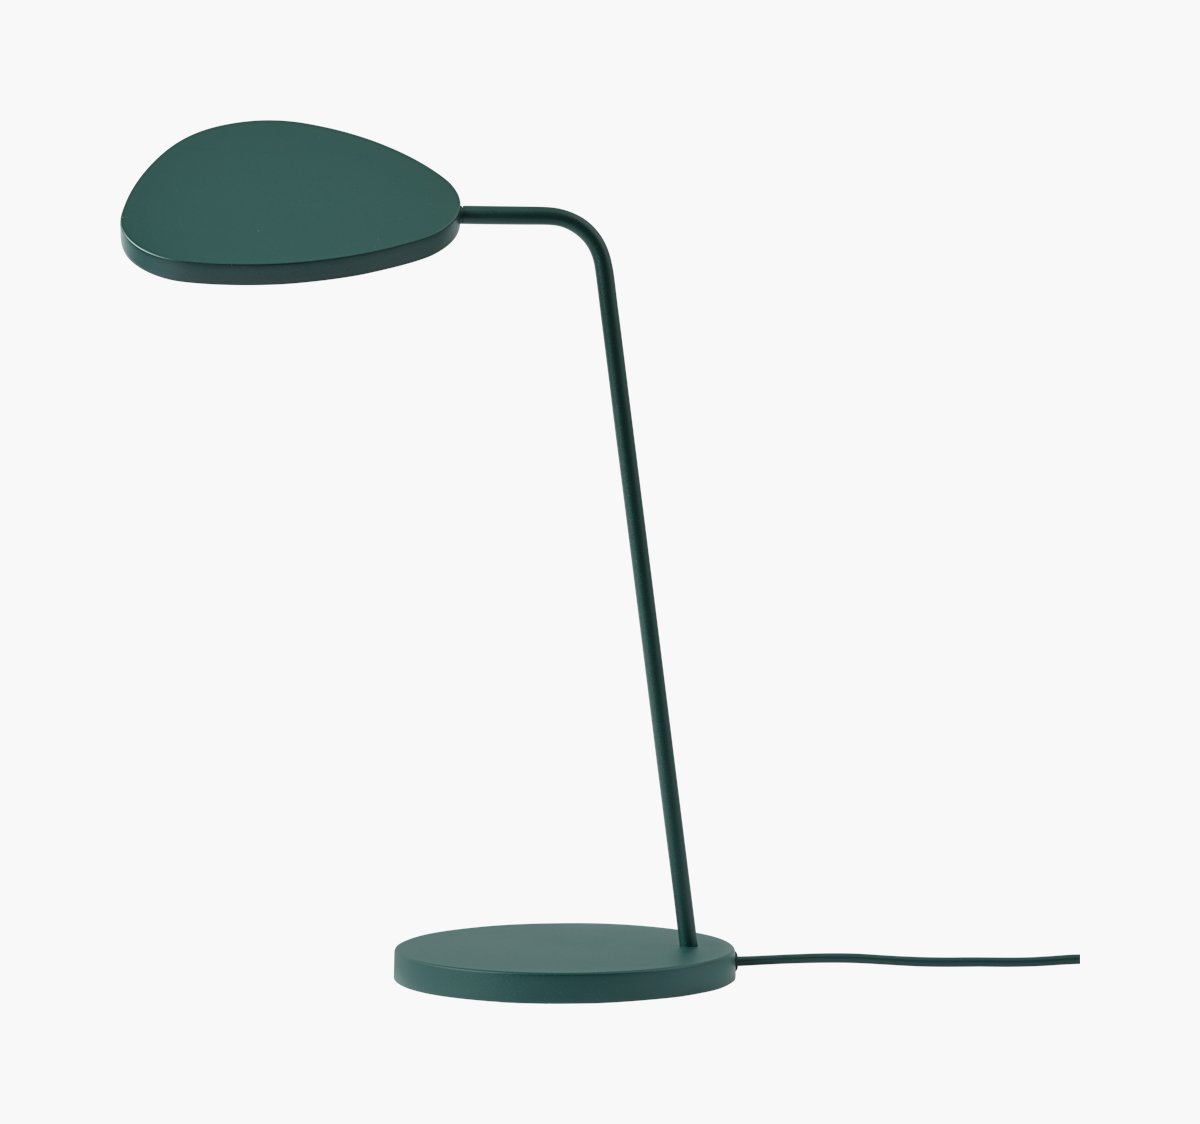 Leaf Table Lamp